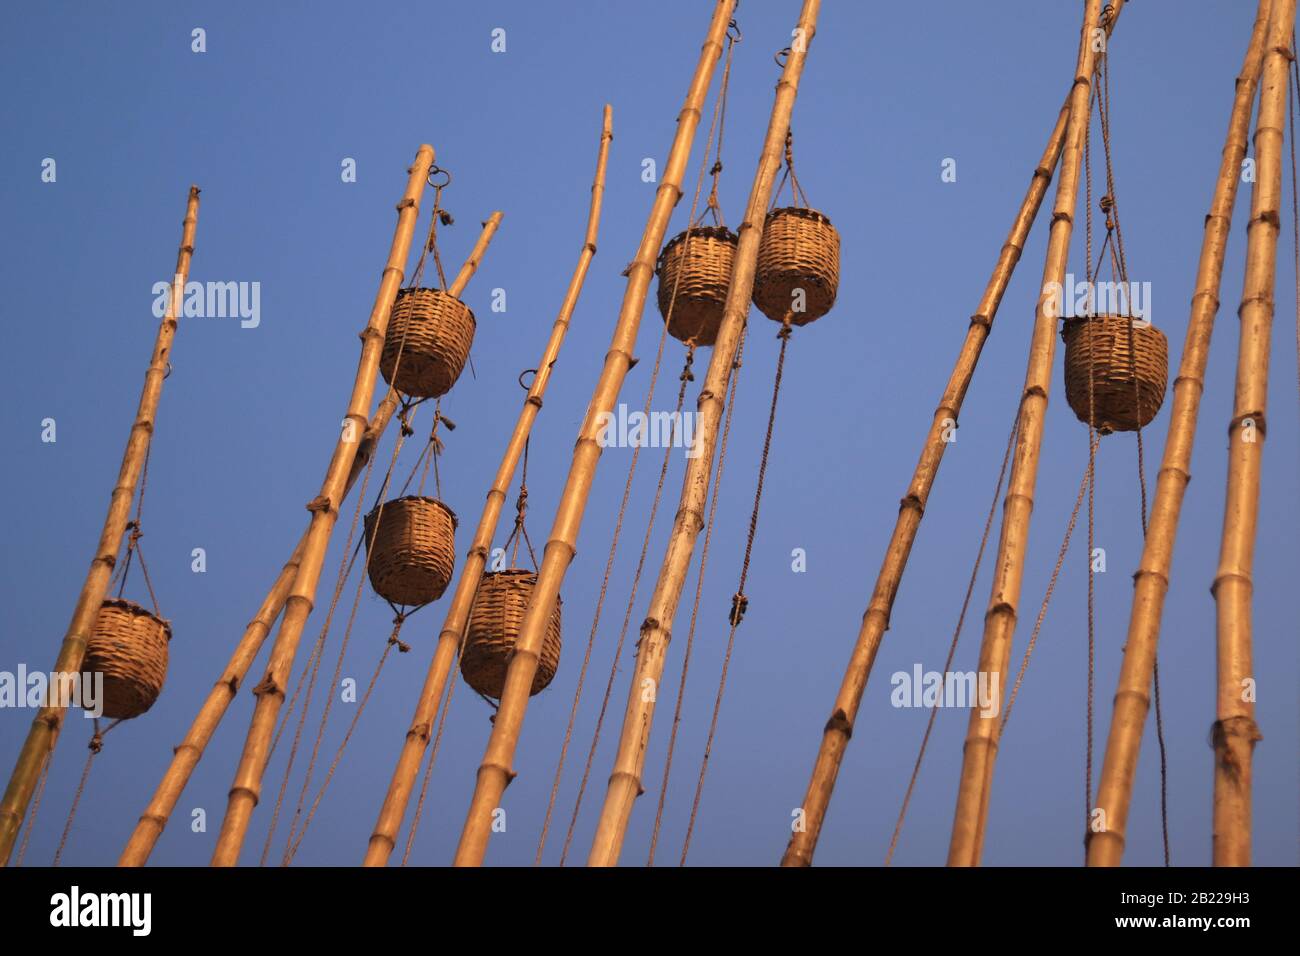 Bâtons de bambou avec offre pour Ganga River à l'intérieur des paniers sur le dessus Banque D'Images